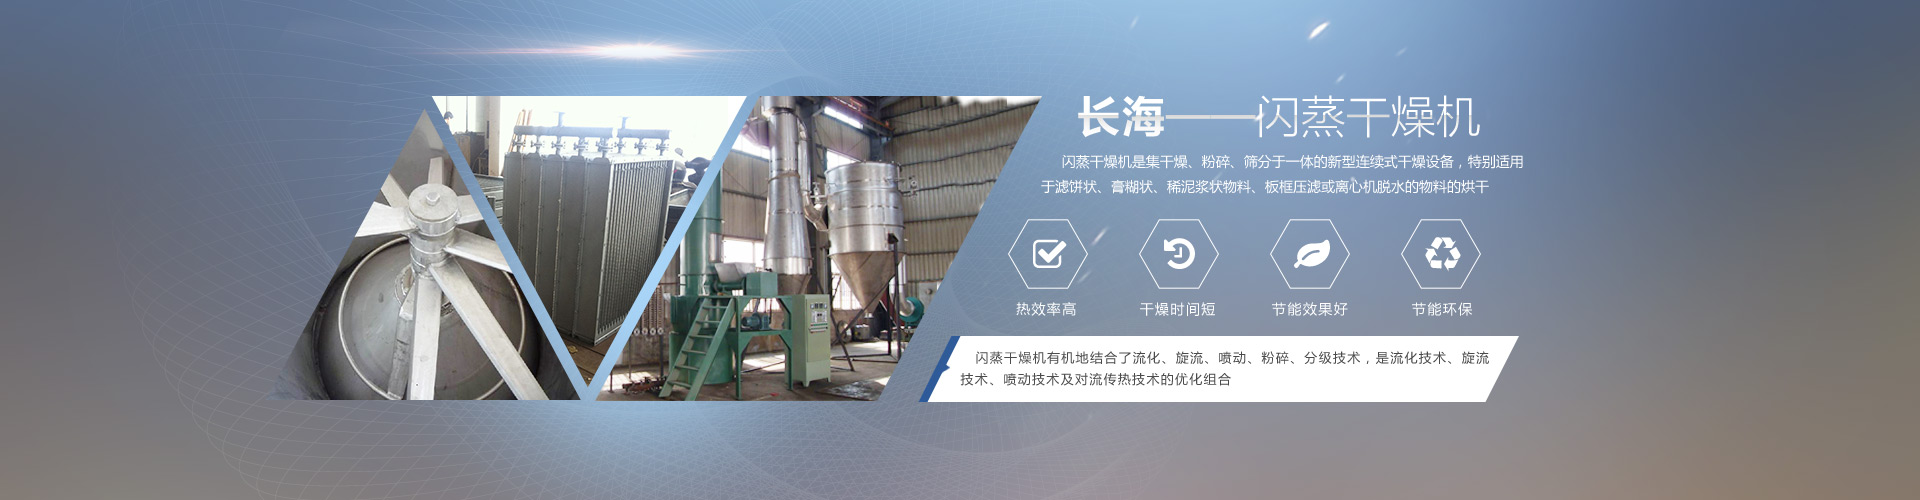 长海干燥专业生产闪蒸干燥机